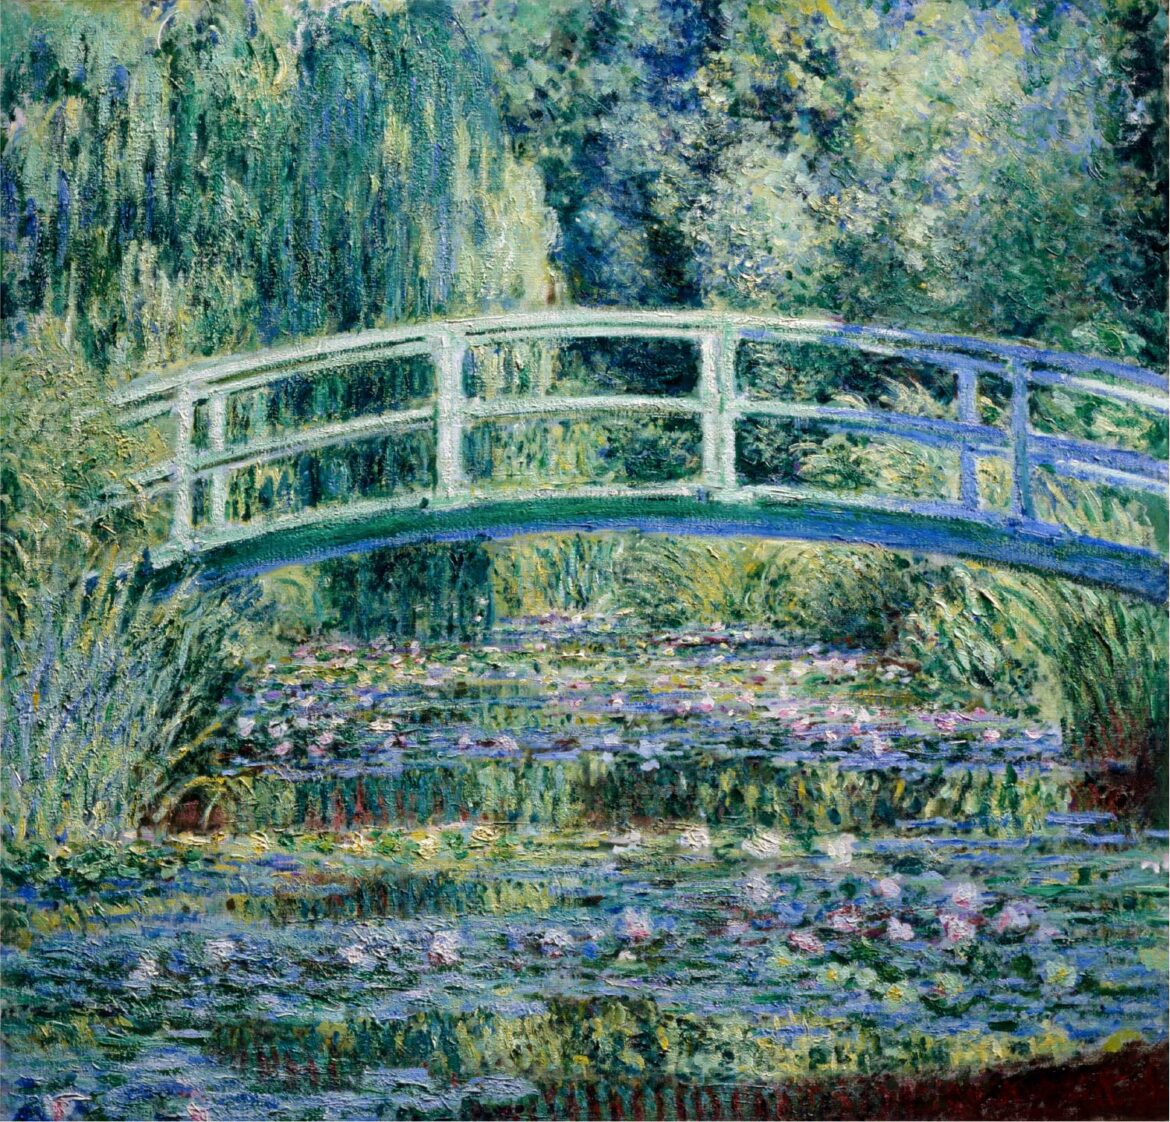 【無料壁紙】クロード・モネ「睡蓮の池と日本の橋 (1899)」 / Claude Water Lilies and Japanese Bridge (1899)